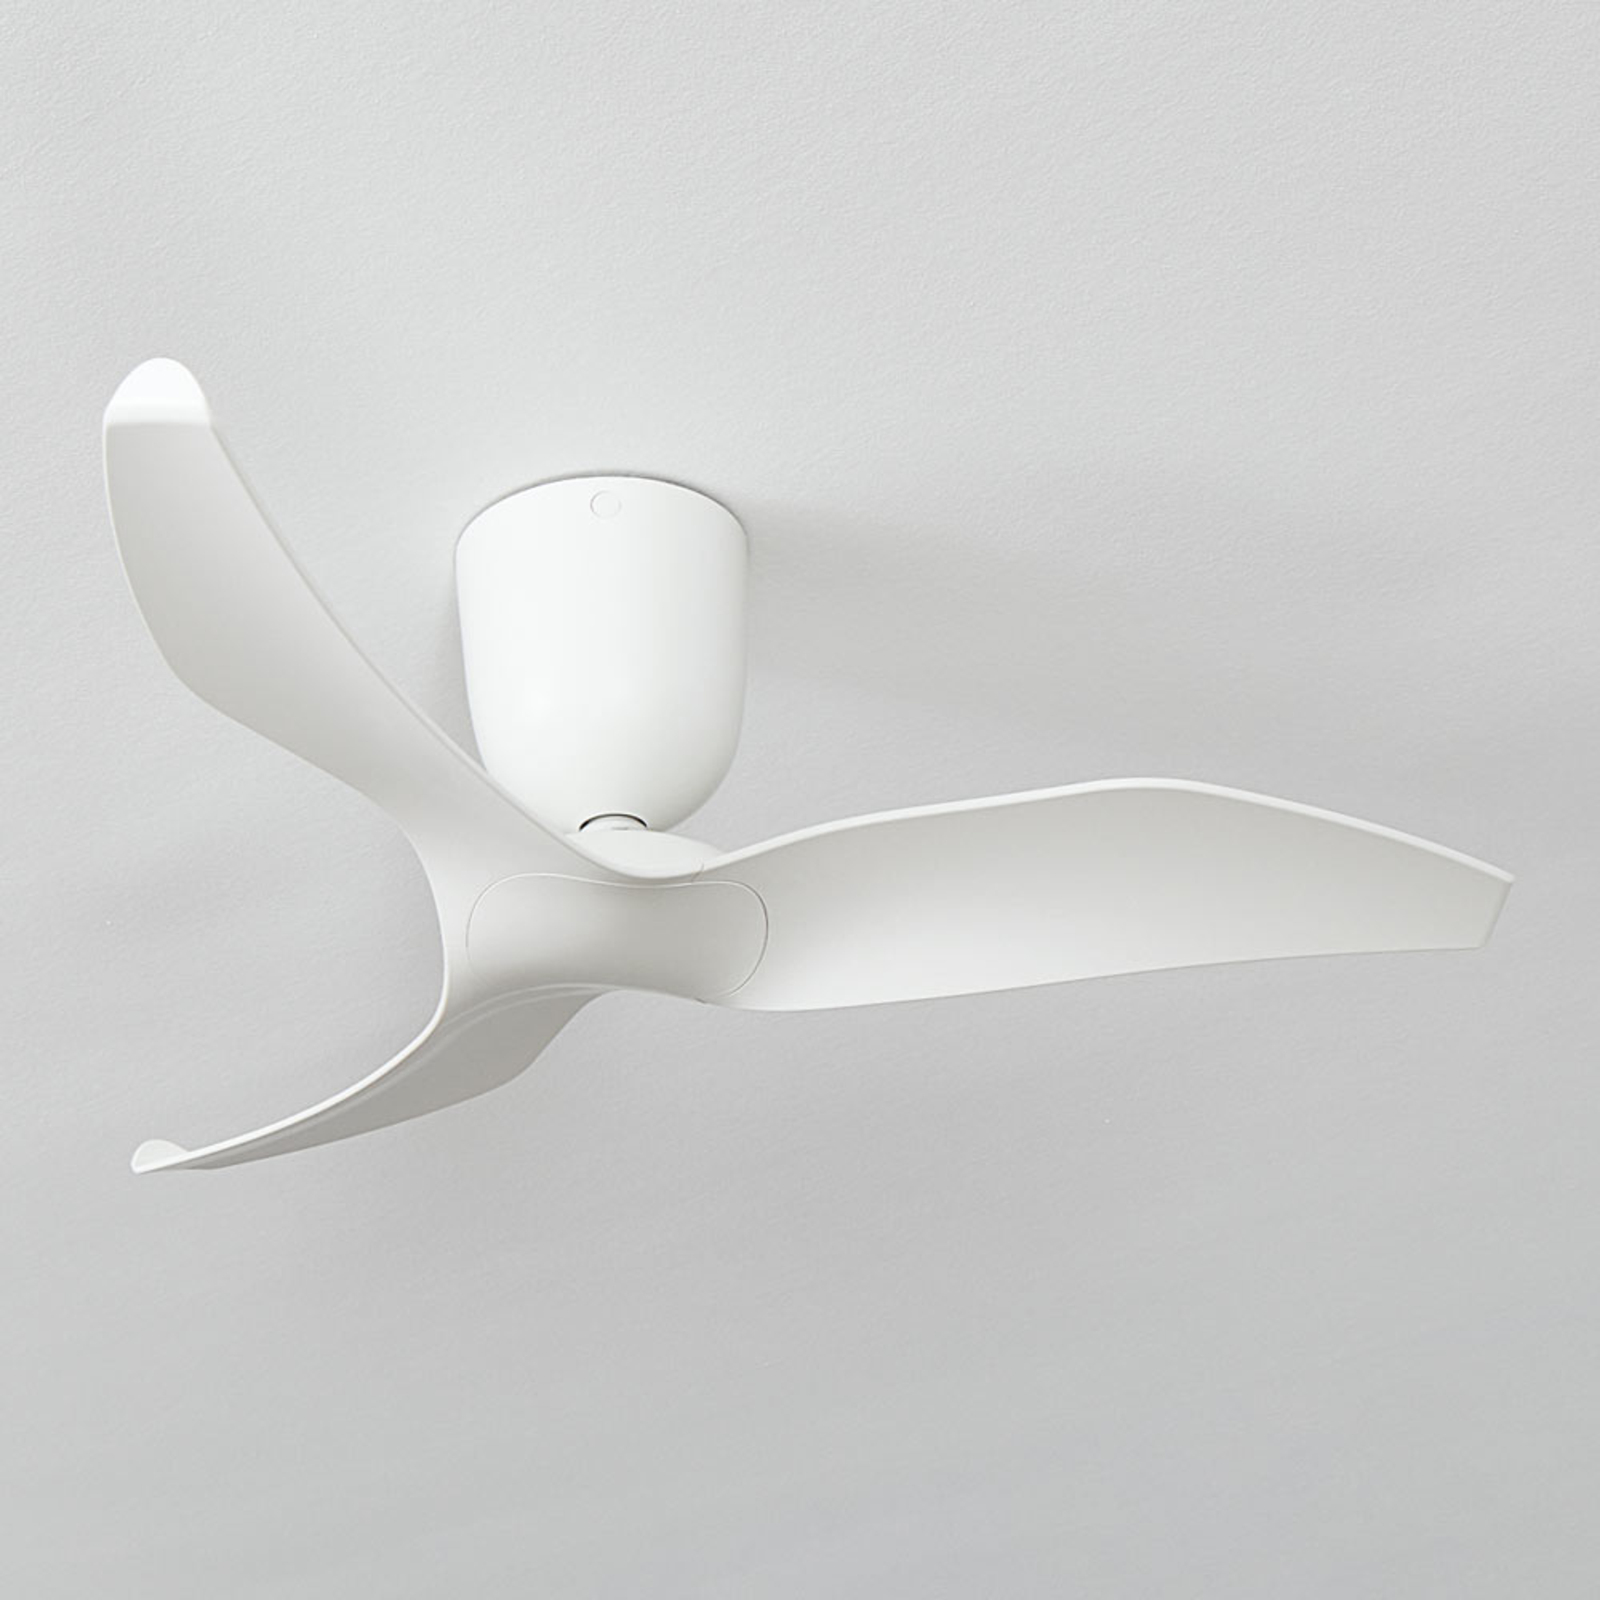 Aeratron FR ventilatore, 109 cm, bianco